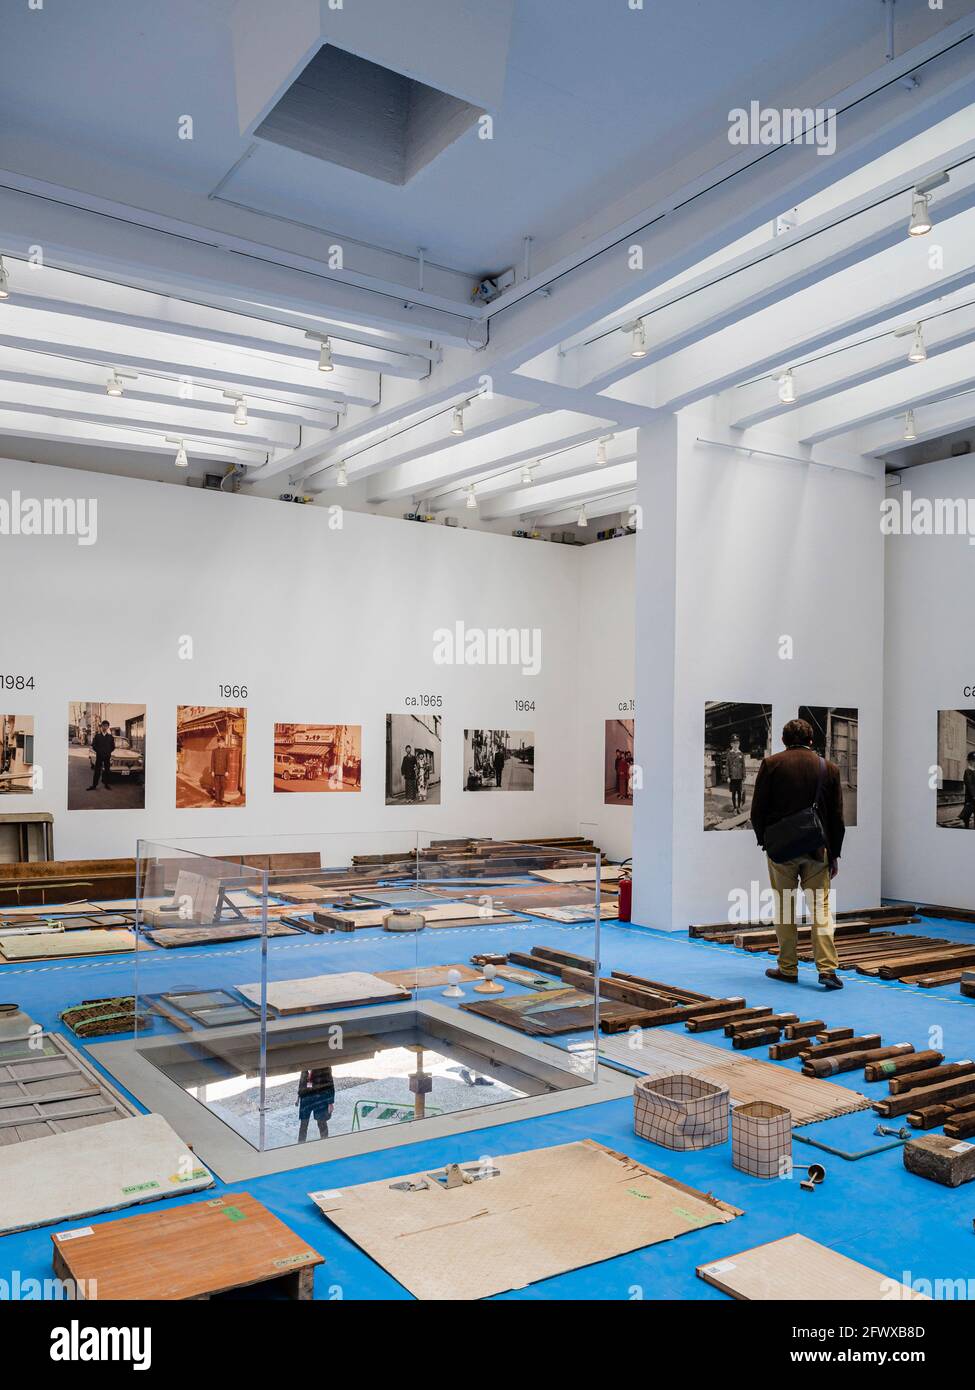 Padiglione Giapponese. 17° Biennale di architettura Venezia, Venezia, Italia. Architetto: Vari, 2021. Foto Stock